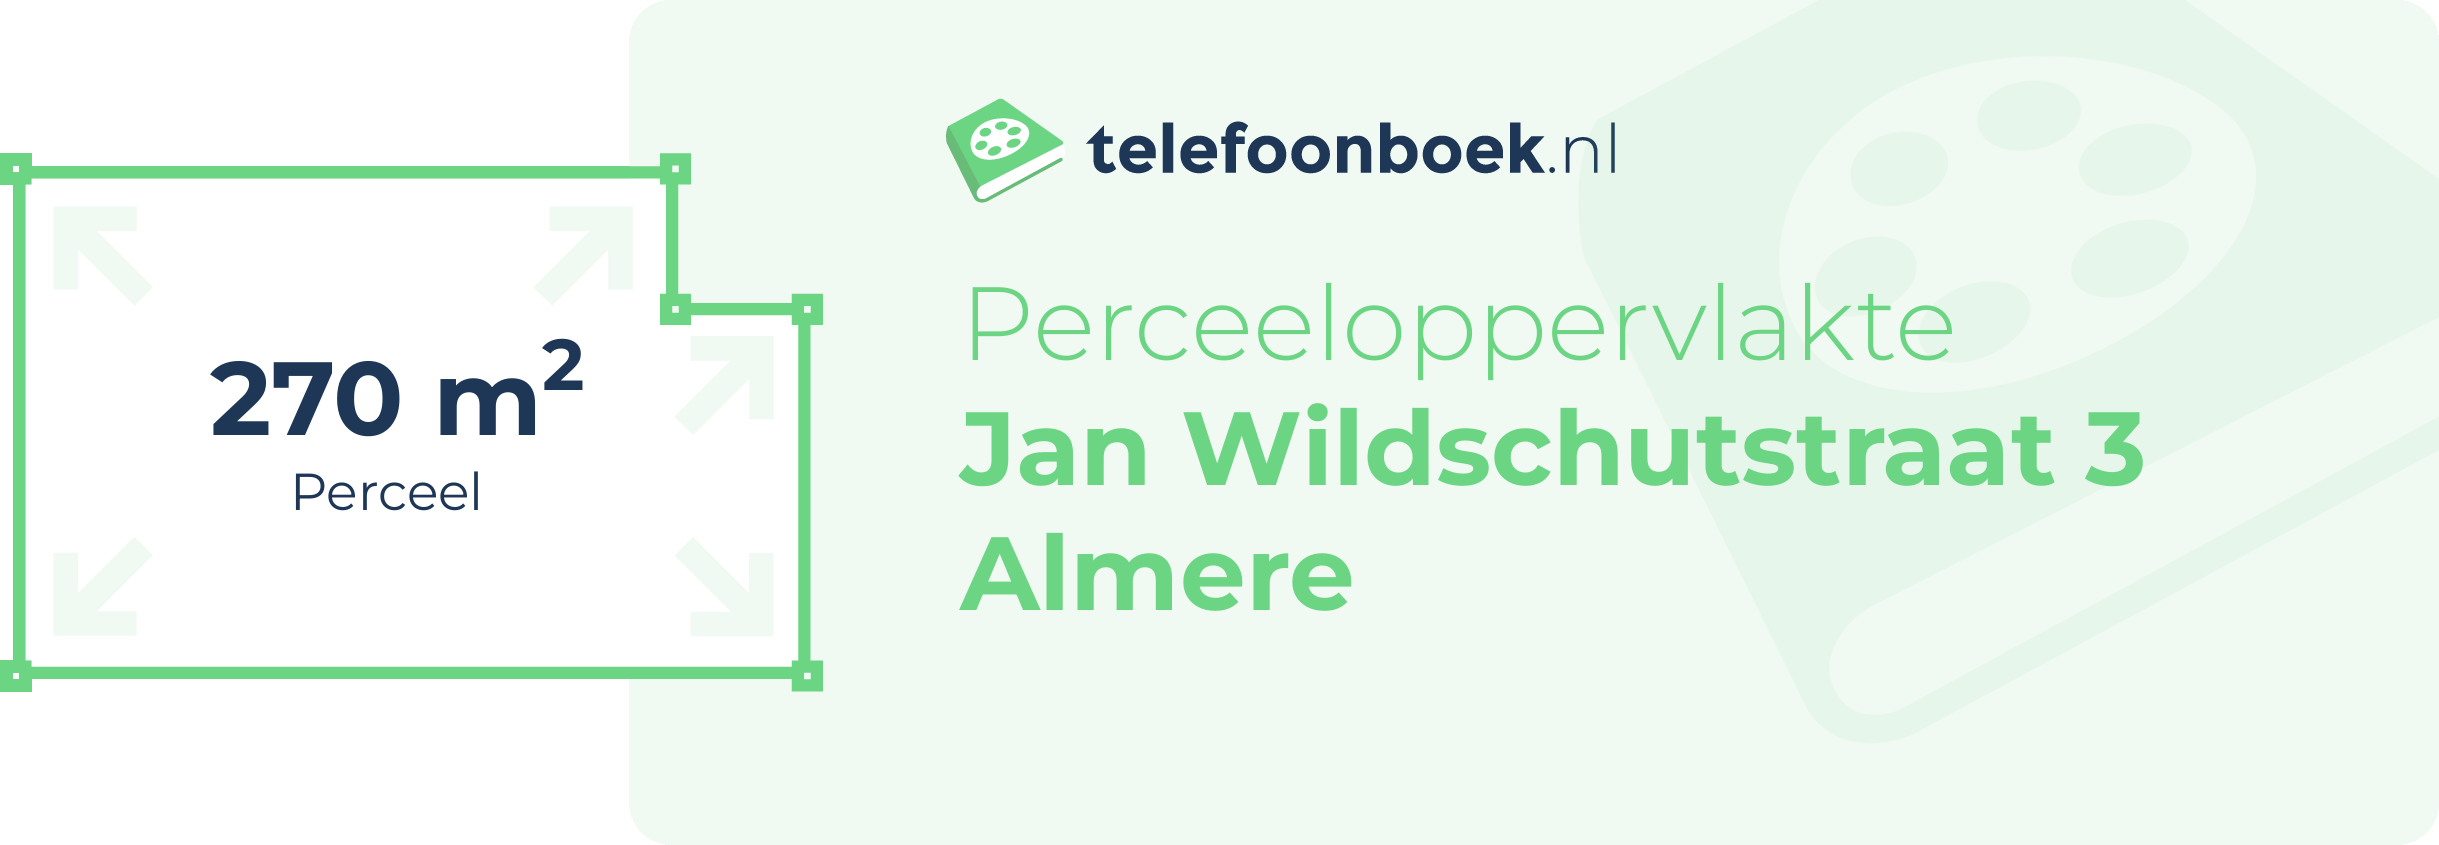 Perceeloppervlakte Jan Wildschutstraat 3 Almere